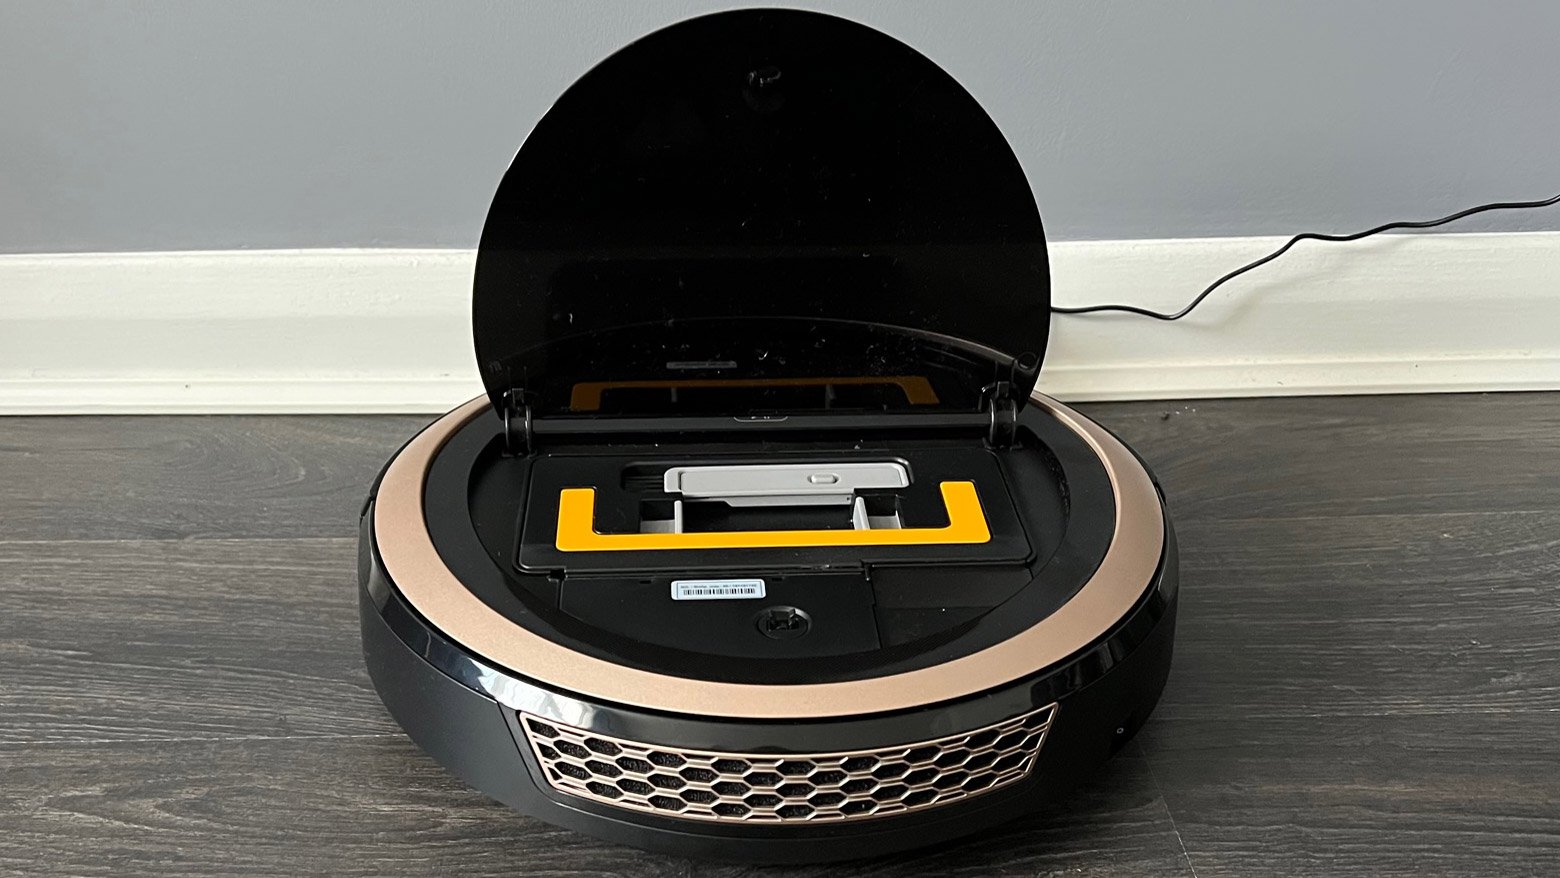 Il Miele Scout RX3 Vision HD con il coperchio aperto e il contenitore della polvere a vista